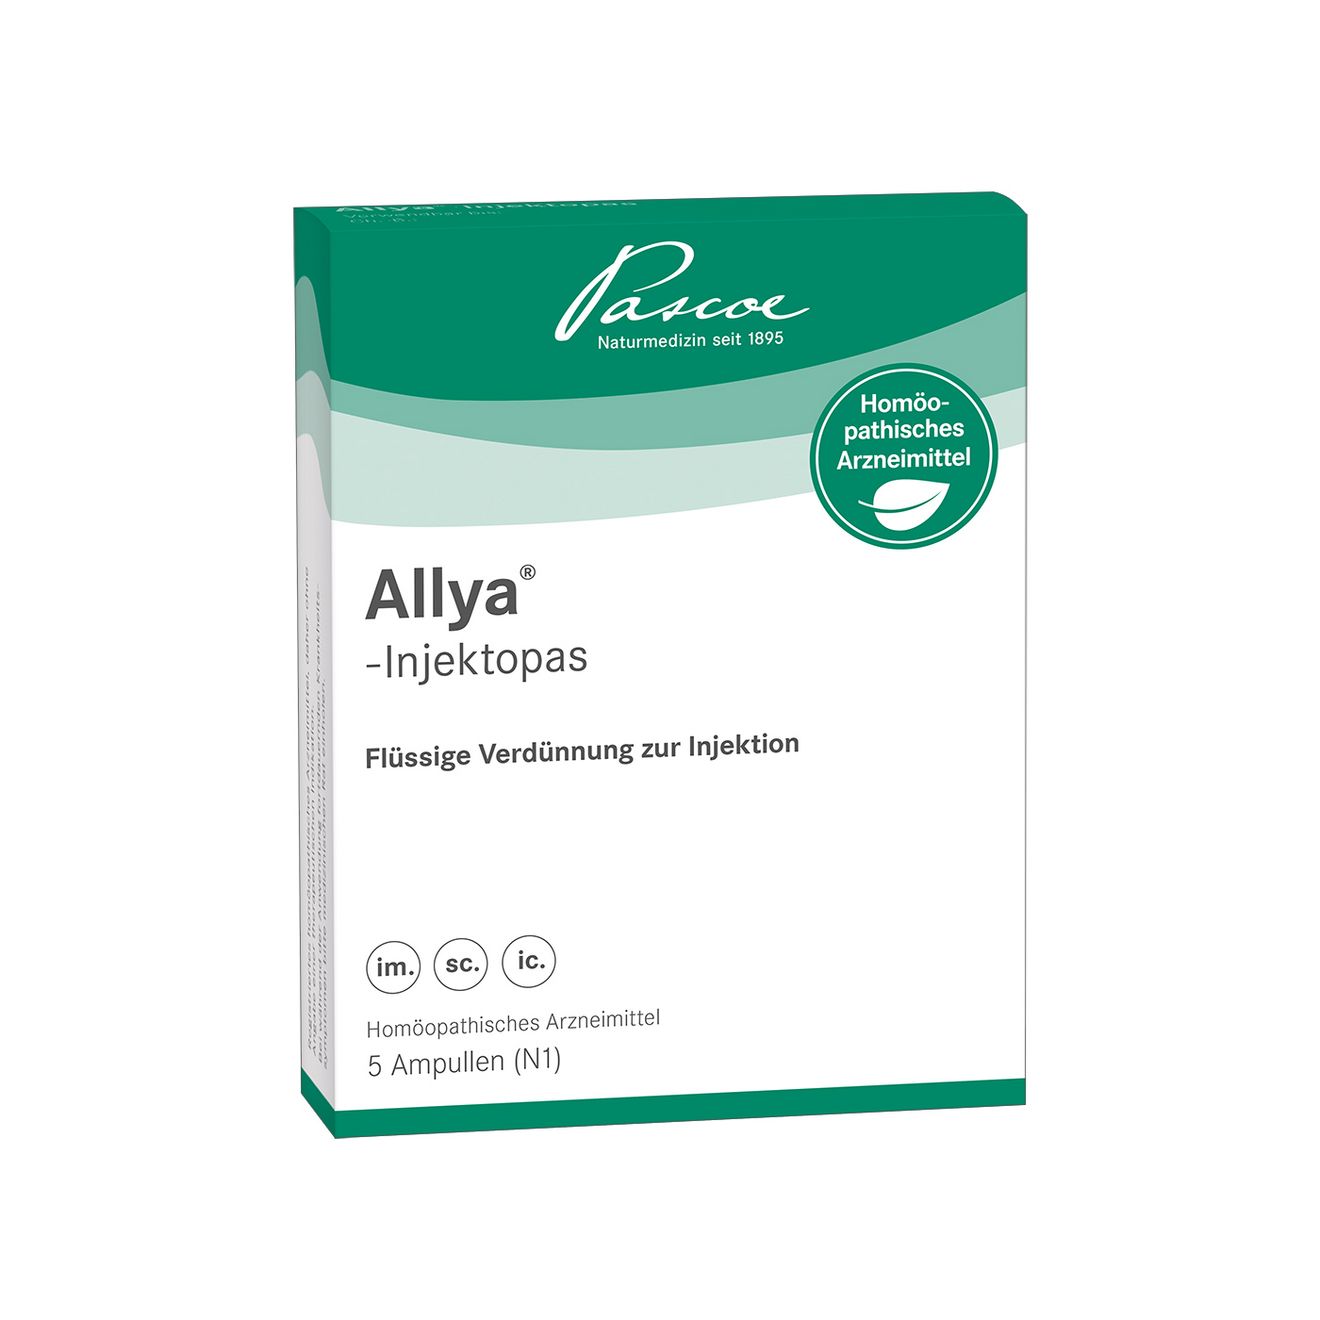 Allya-Injektopas 5 x 5 ml Packshot PZN 11127933